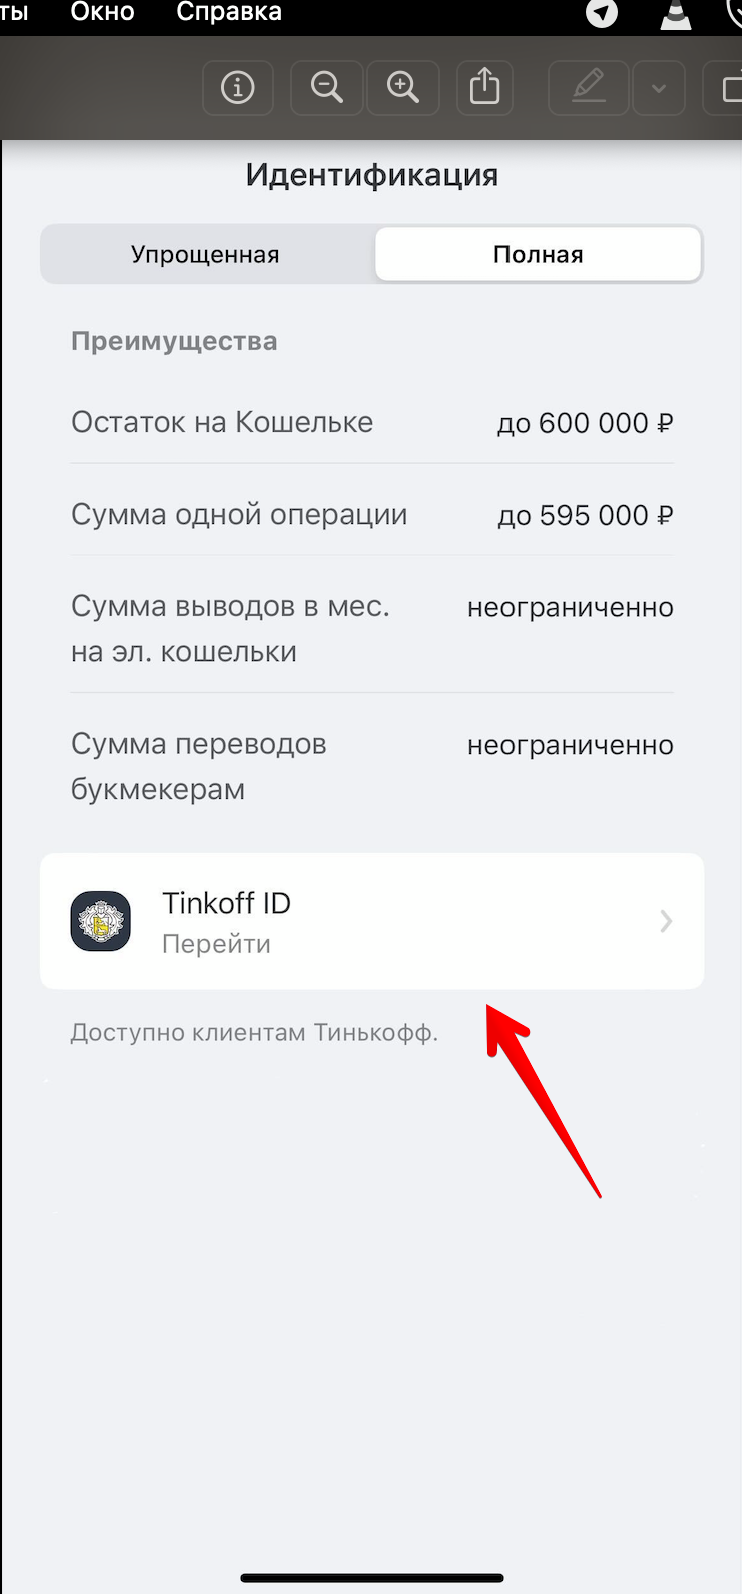 Идентификация через Тинькофф ID